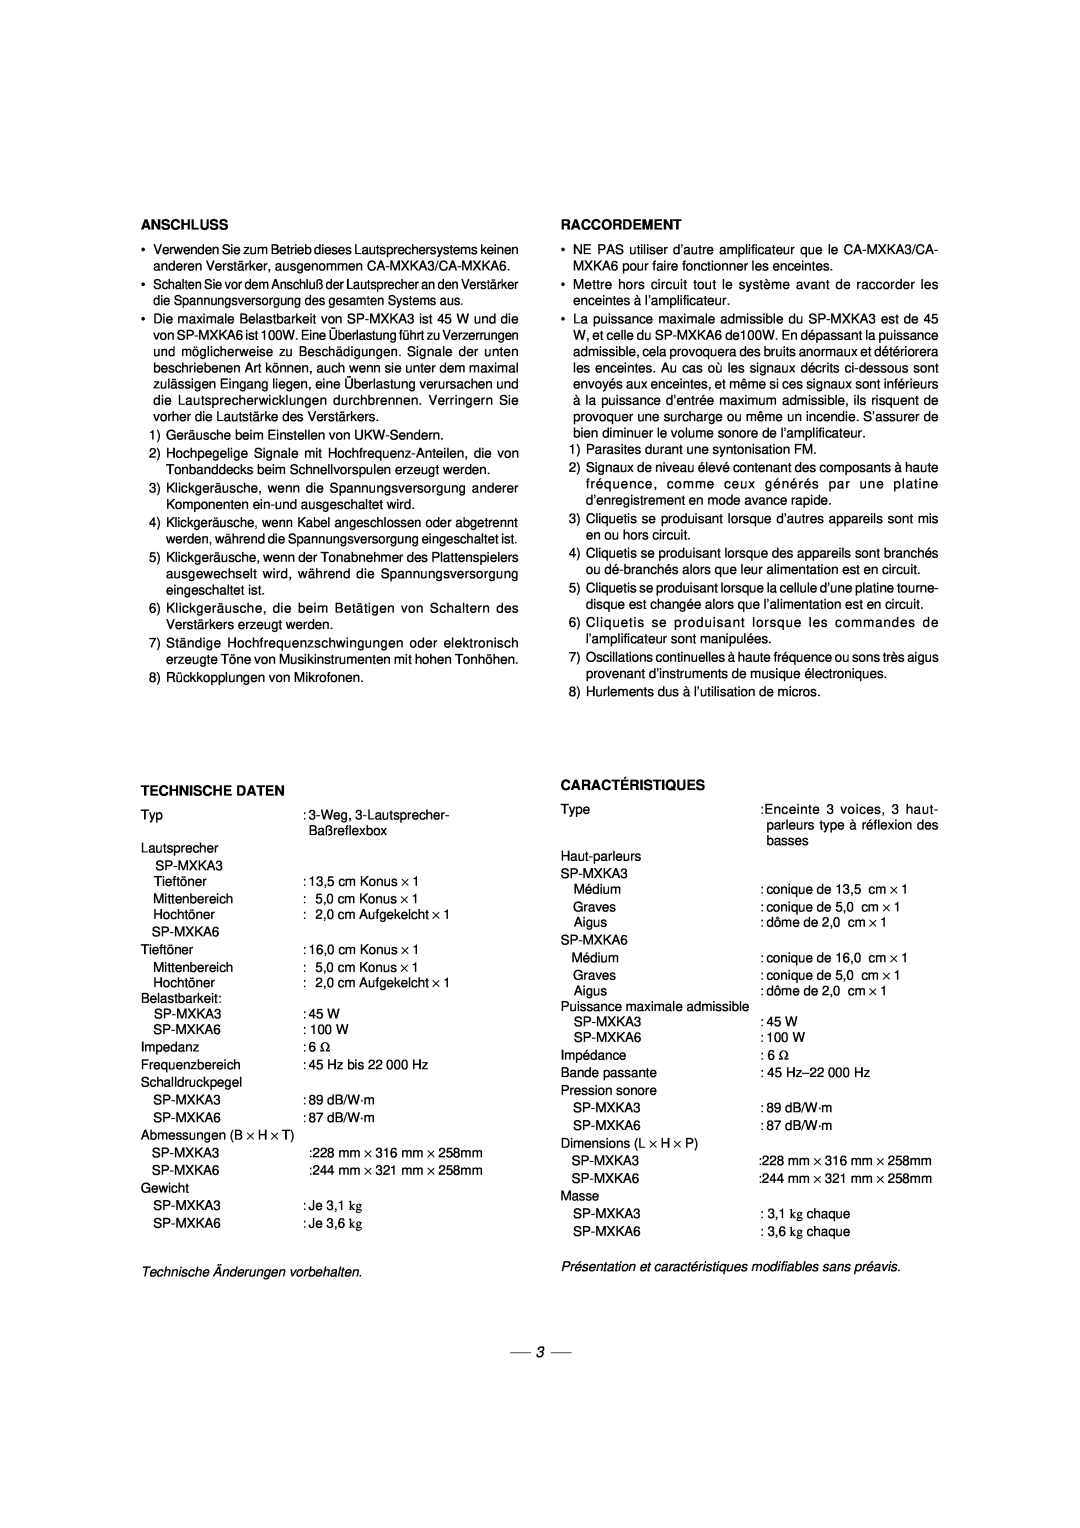 JVC LVT1014-003A, CA-MXKA6, 0303NYMCREBETEN manual Anschluss, Raccordement, Technische Daten, Caractéristiques 